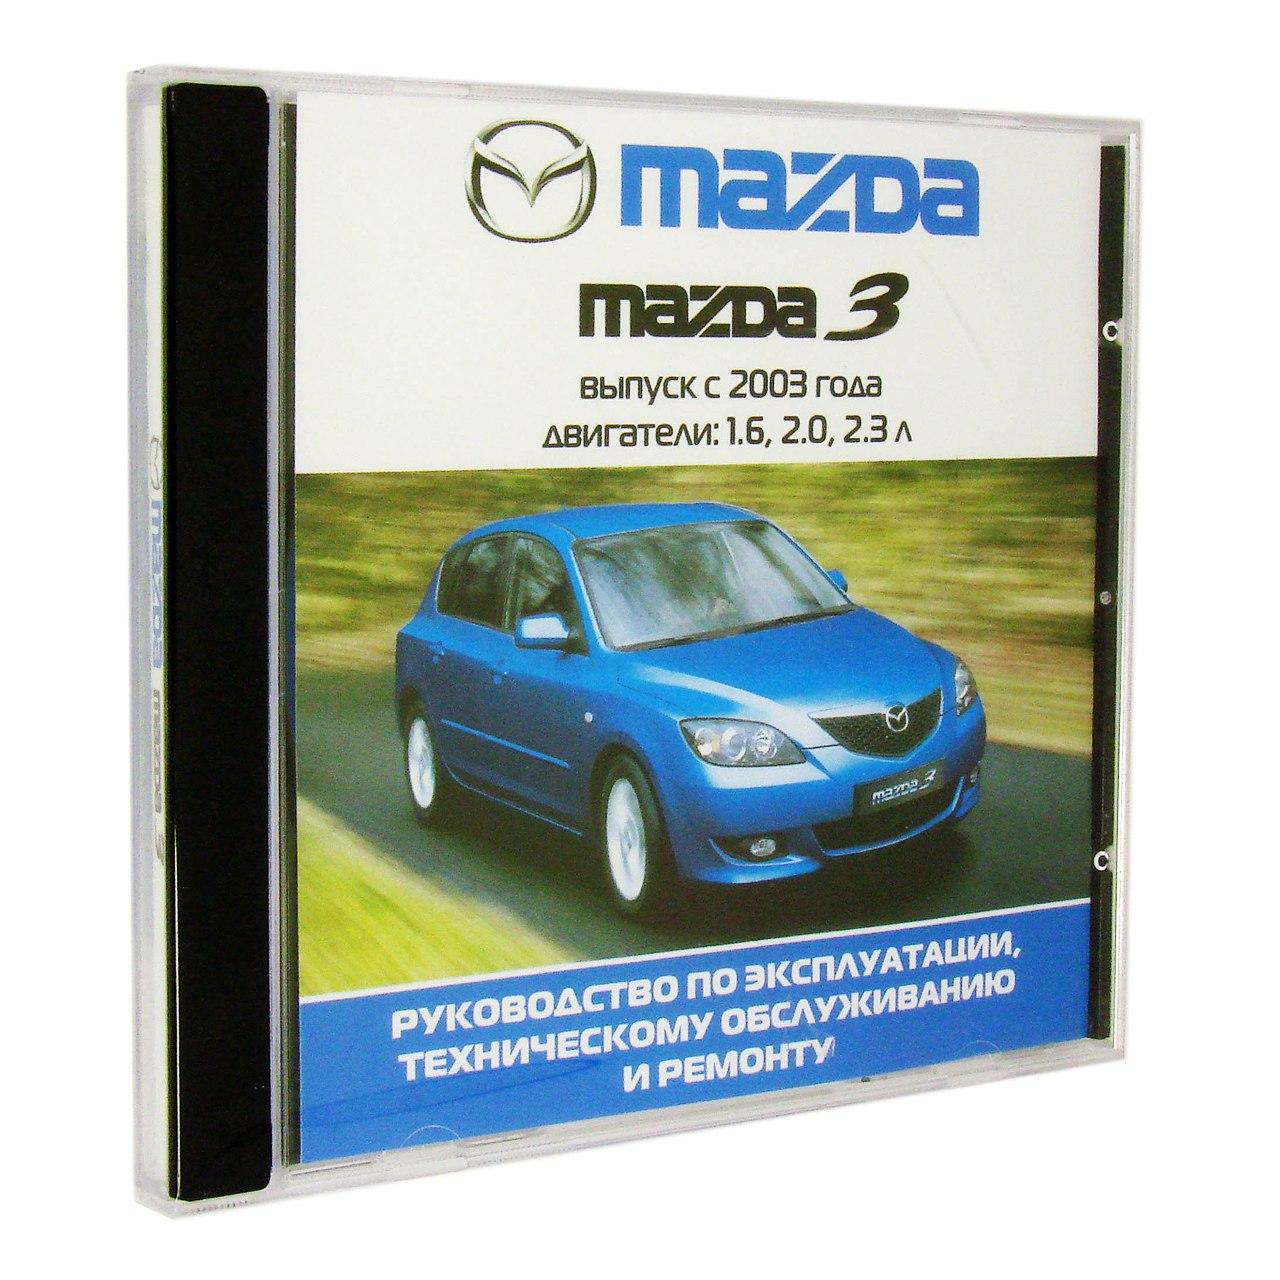 Компьютерный компакт-диск Mazda 3 с 2003г. Б(1.6,2.0,2.3 л.). ’Школа авторемонта’. (ПК), фирма "Третий Рим", 1CD